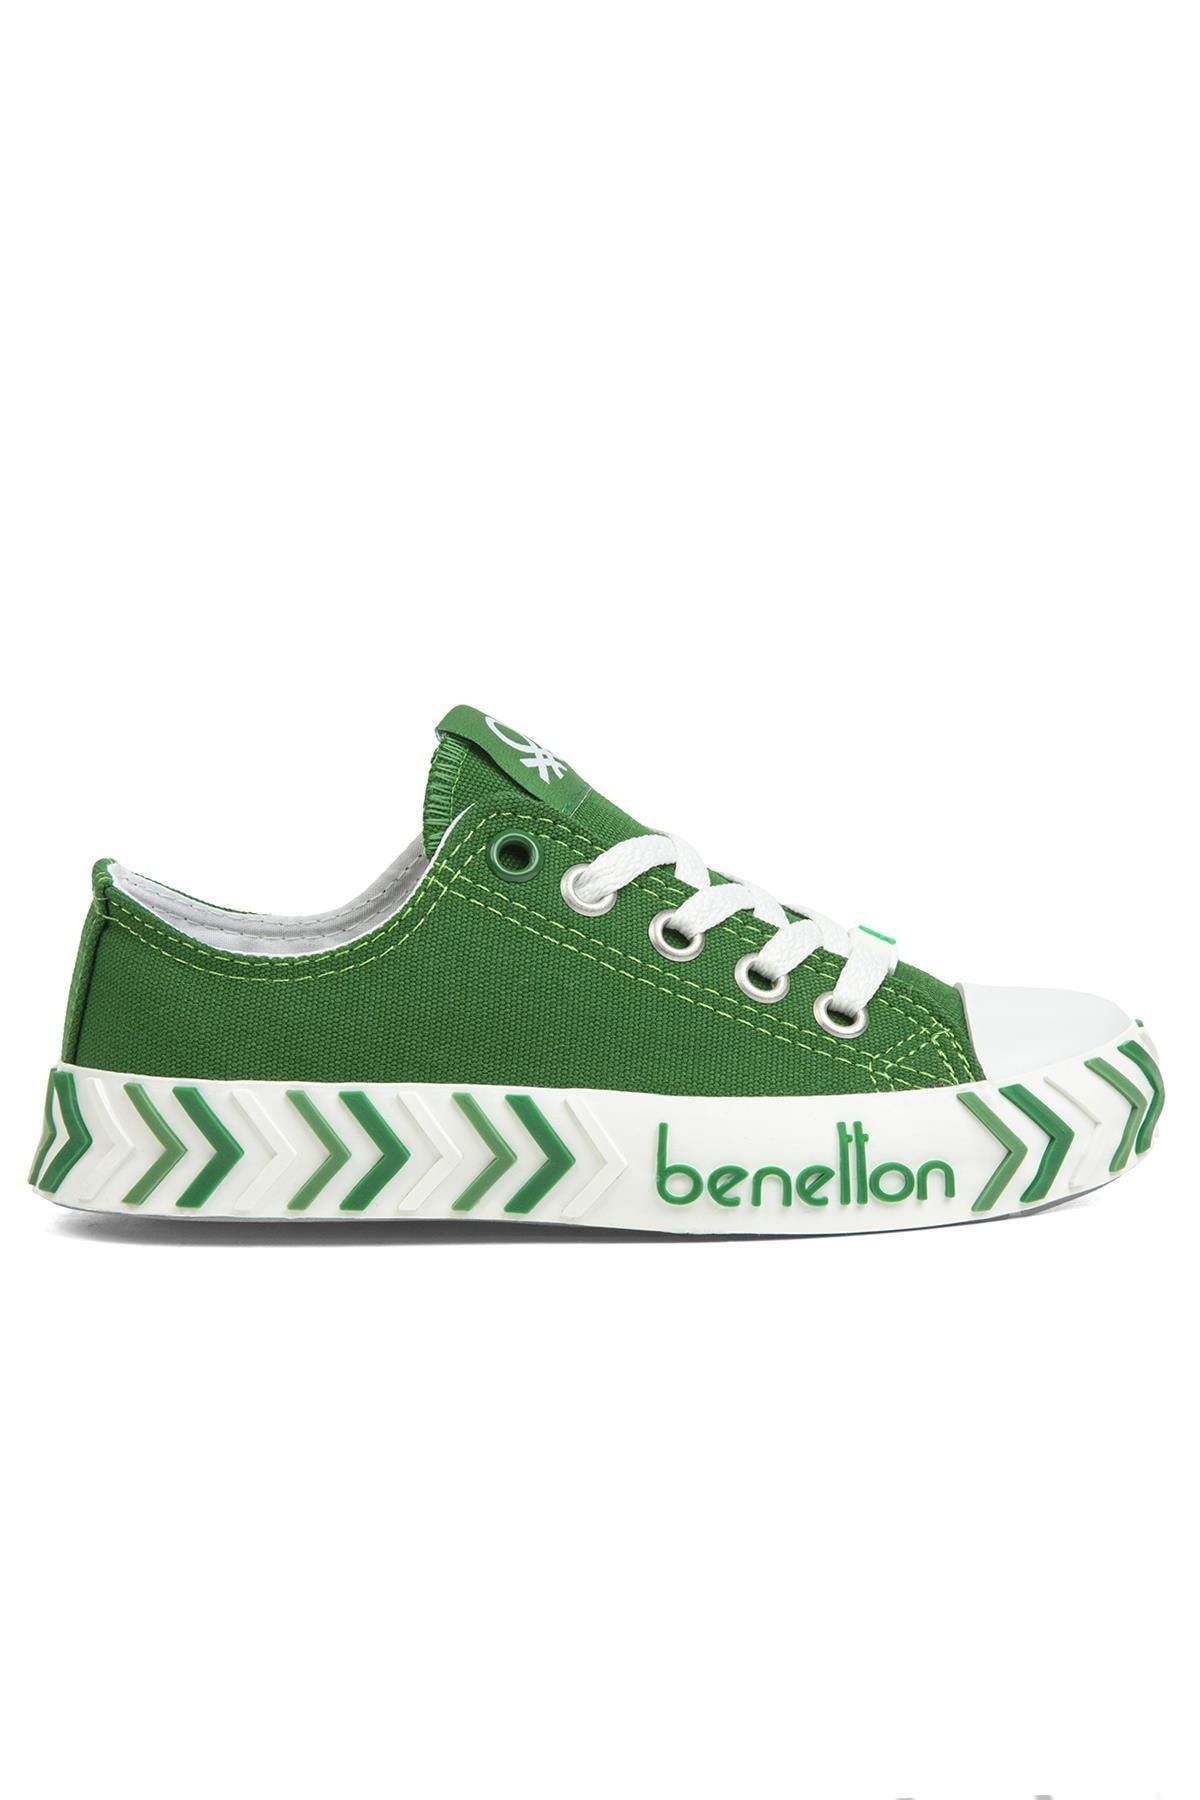 Benetton ® | Bn-30624-3374 Yeşil - Kadın Spor Ayakkabı